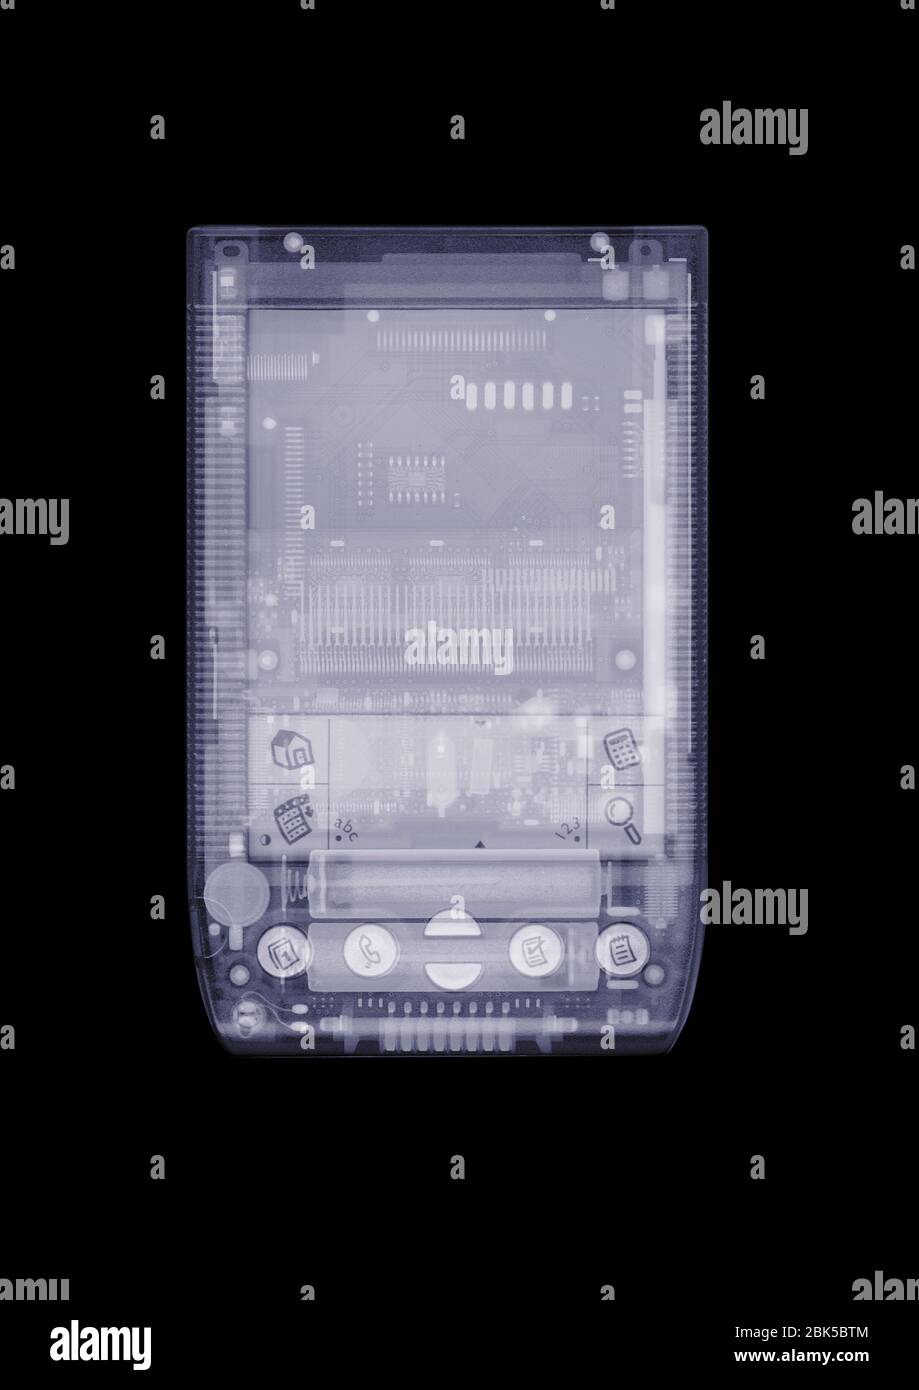 Asistente digital personal PDA, rayos X. Foto de stock